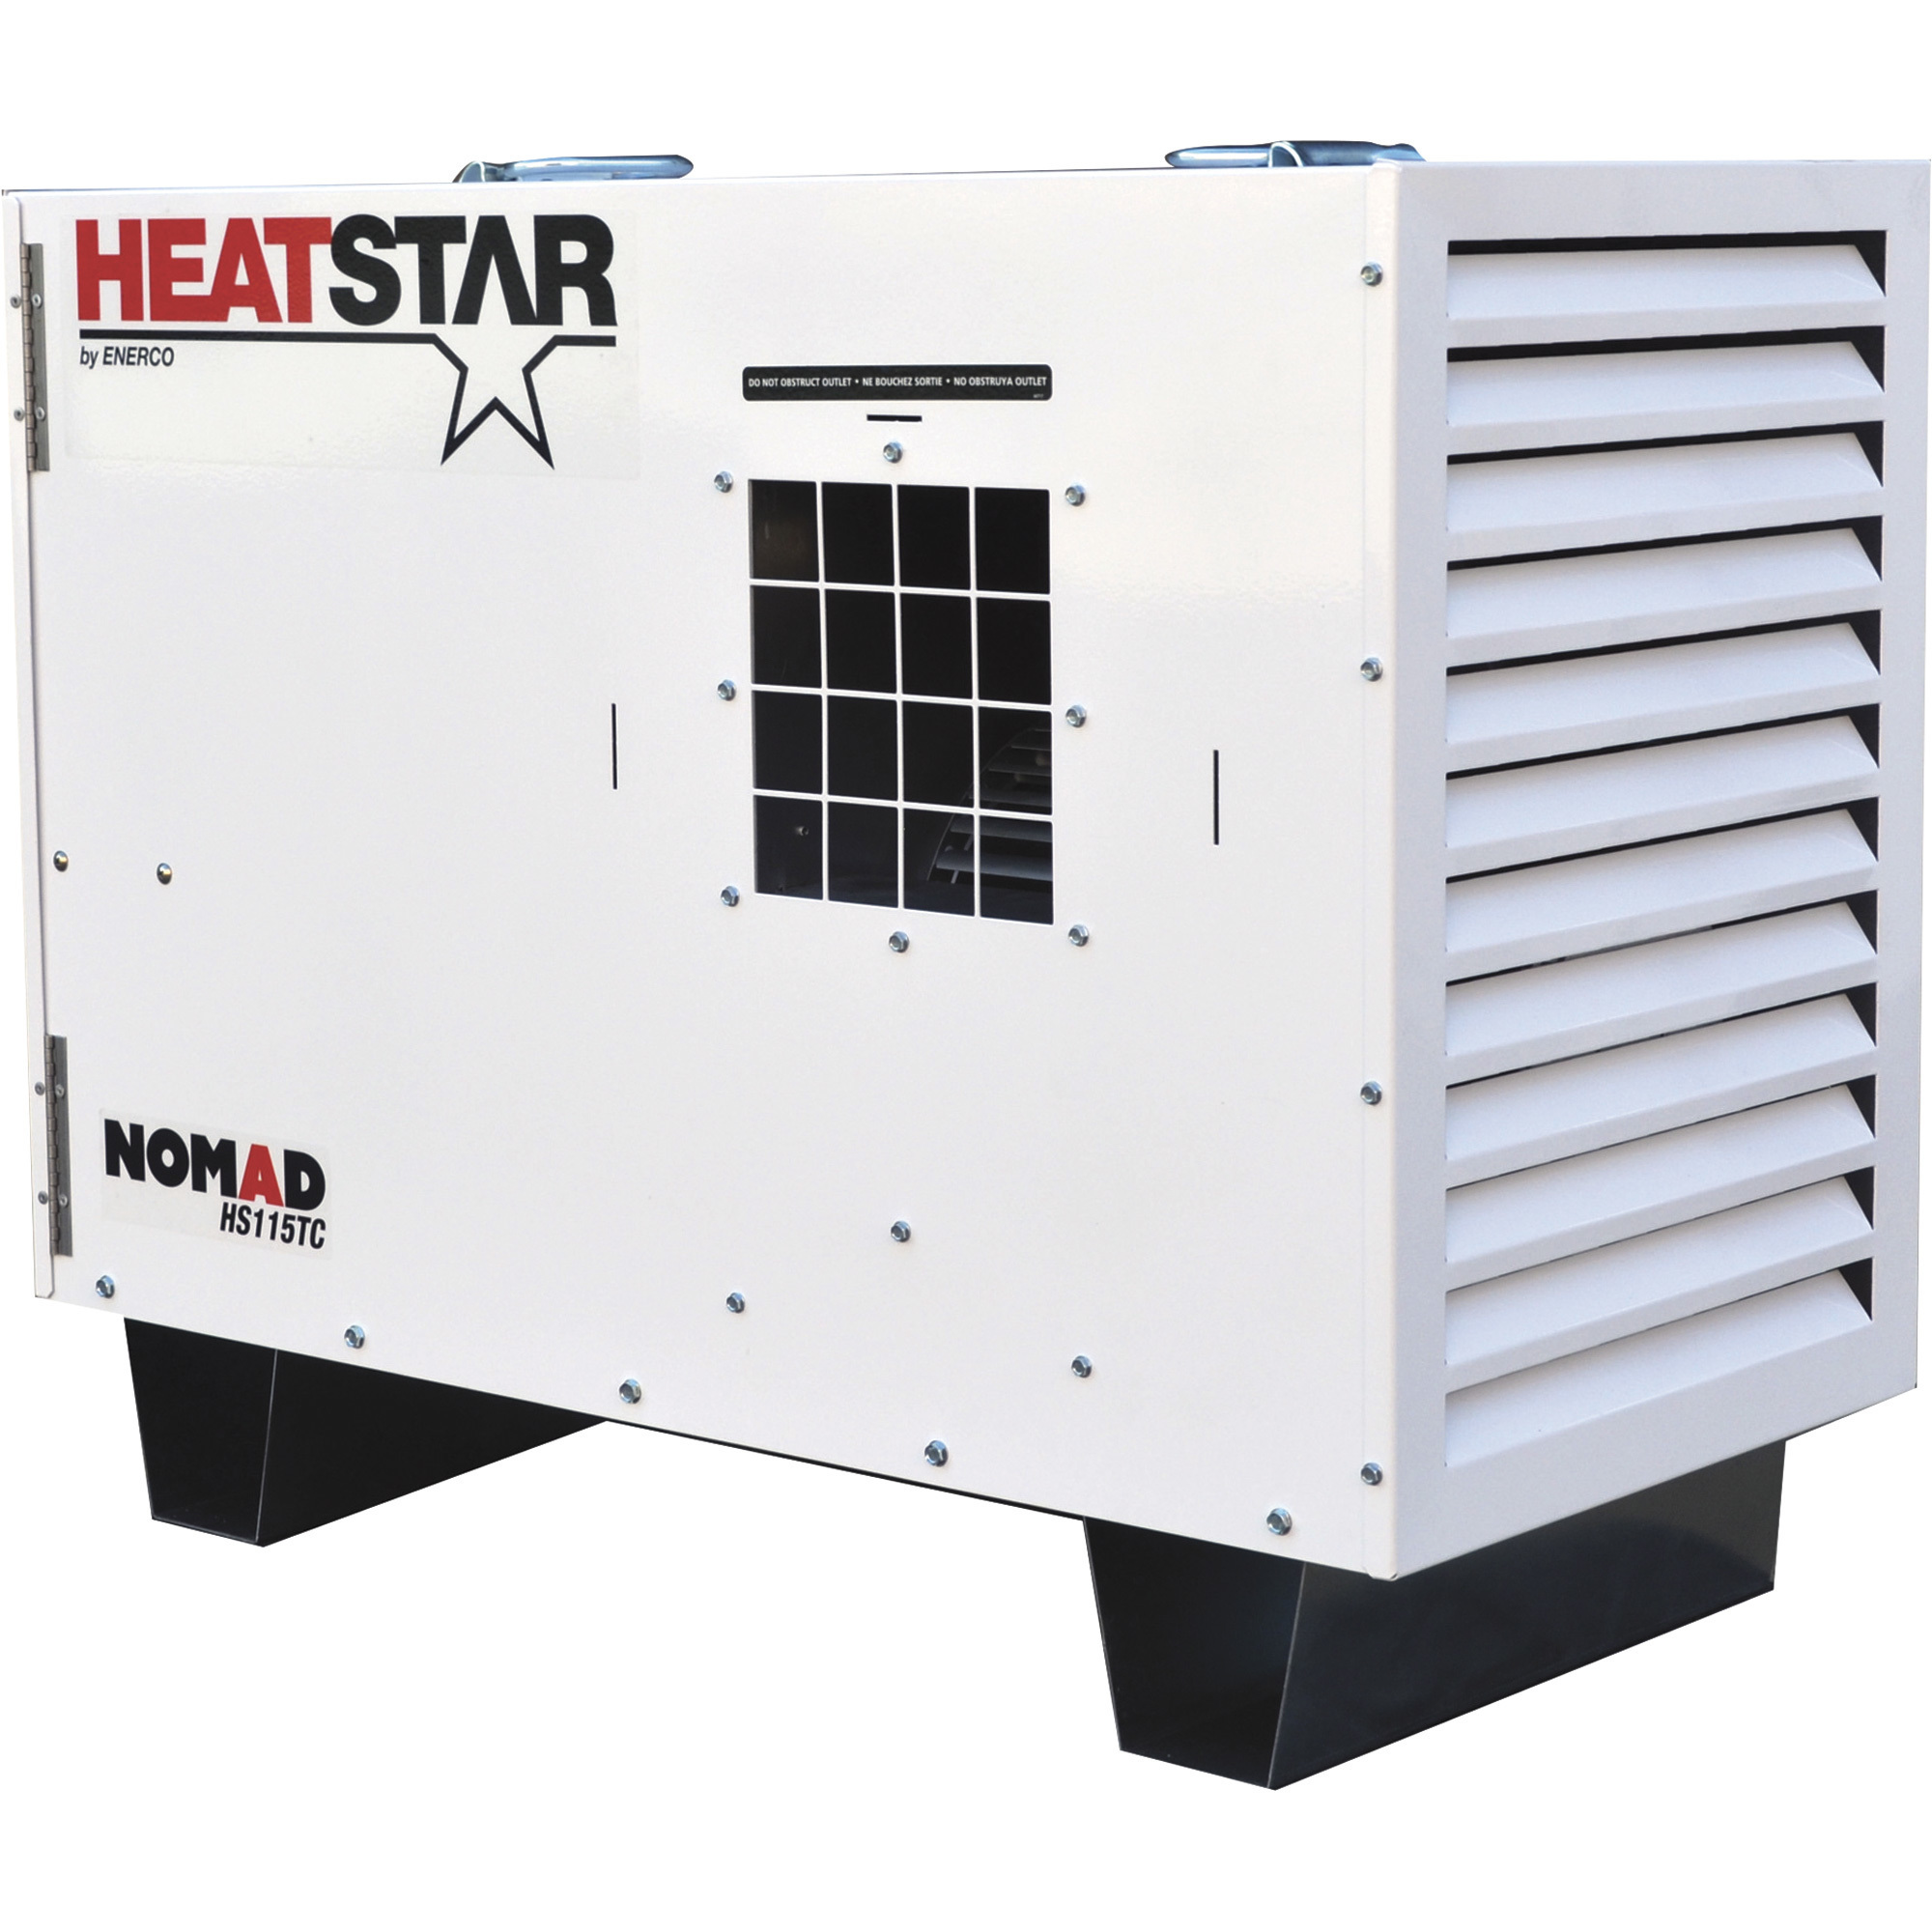 HeatStar Direct-Fired Forced Air Heater, 115,000 BTU, 650 CFM, Forced Air, Model HS115TC